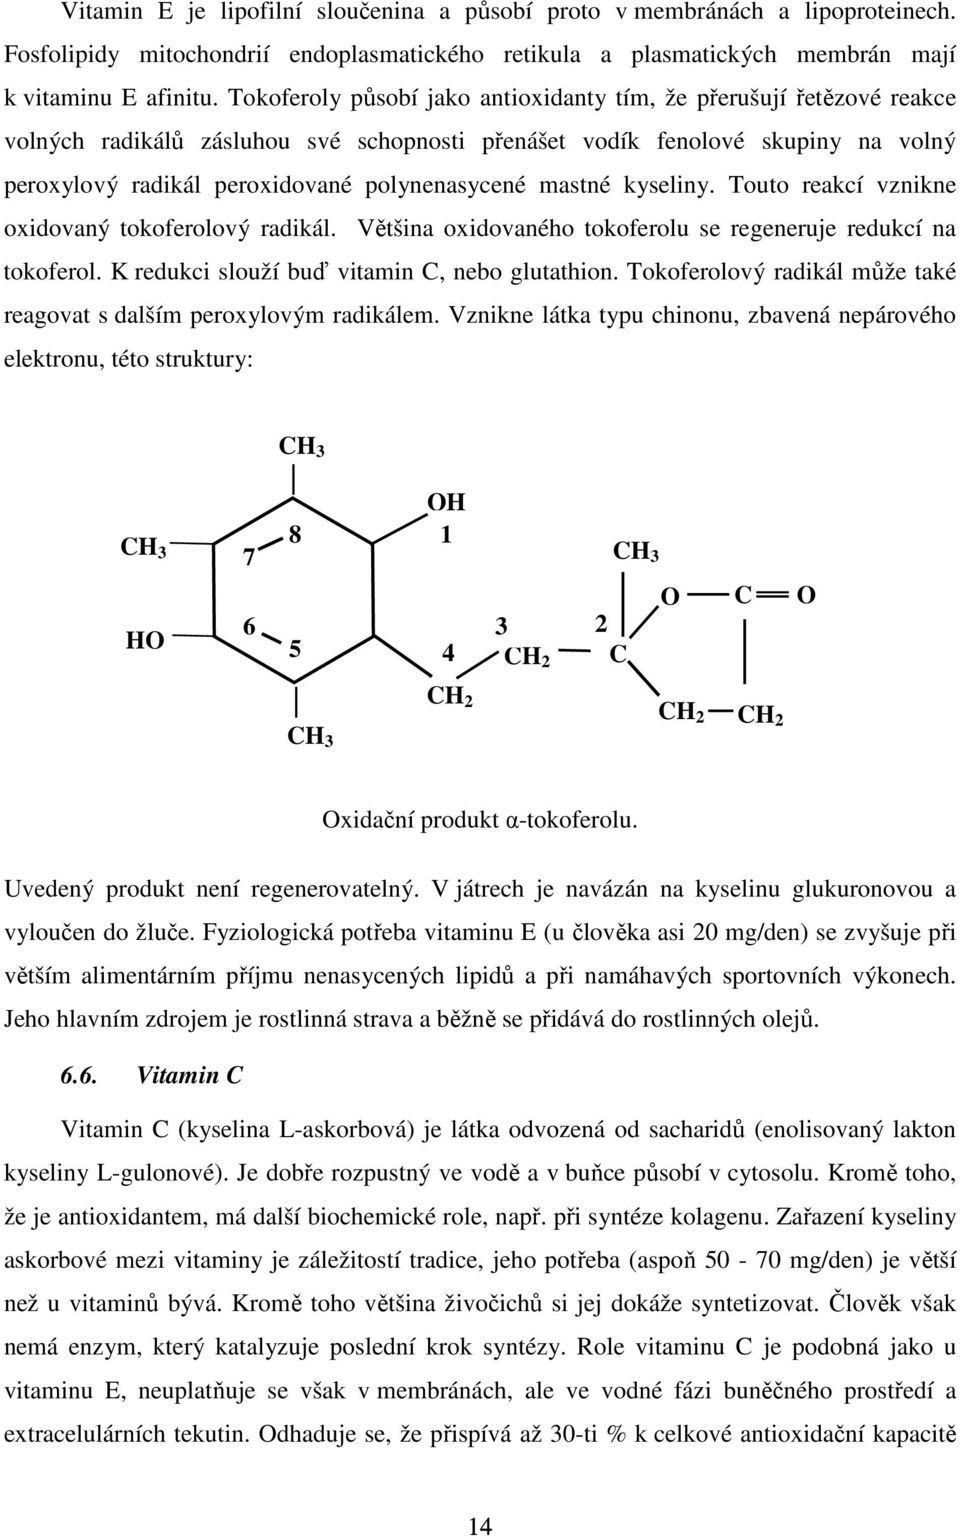 mastné kyseliny. Touto reakcí vznikne oxidovaný tokoferolový radikál. Většina oxidovaného tokoferolu se regeneruje redukcí na tokoferol. K redukci slouží buď vitamin C, nebo glutathion.